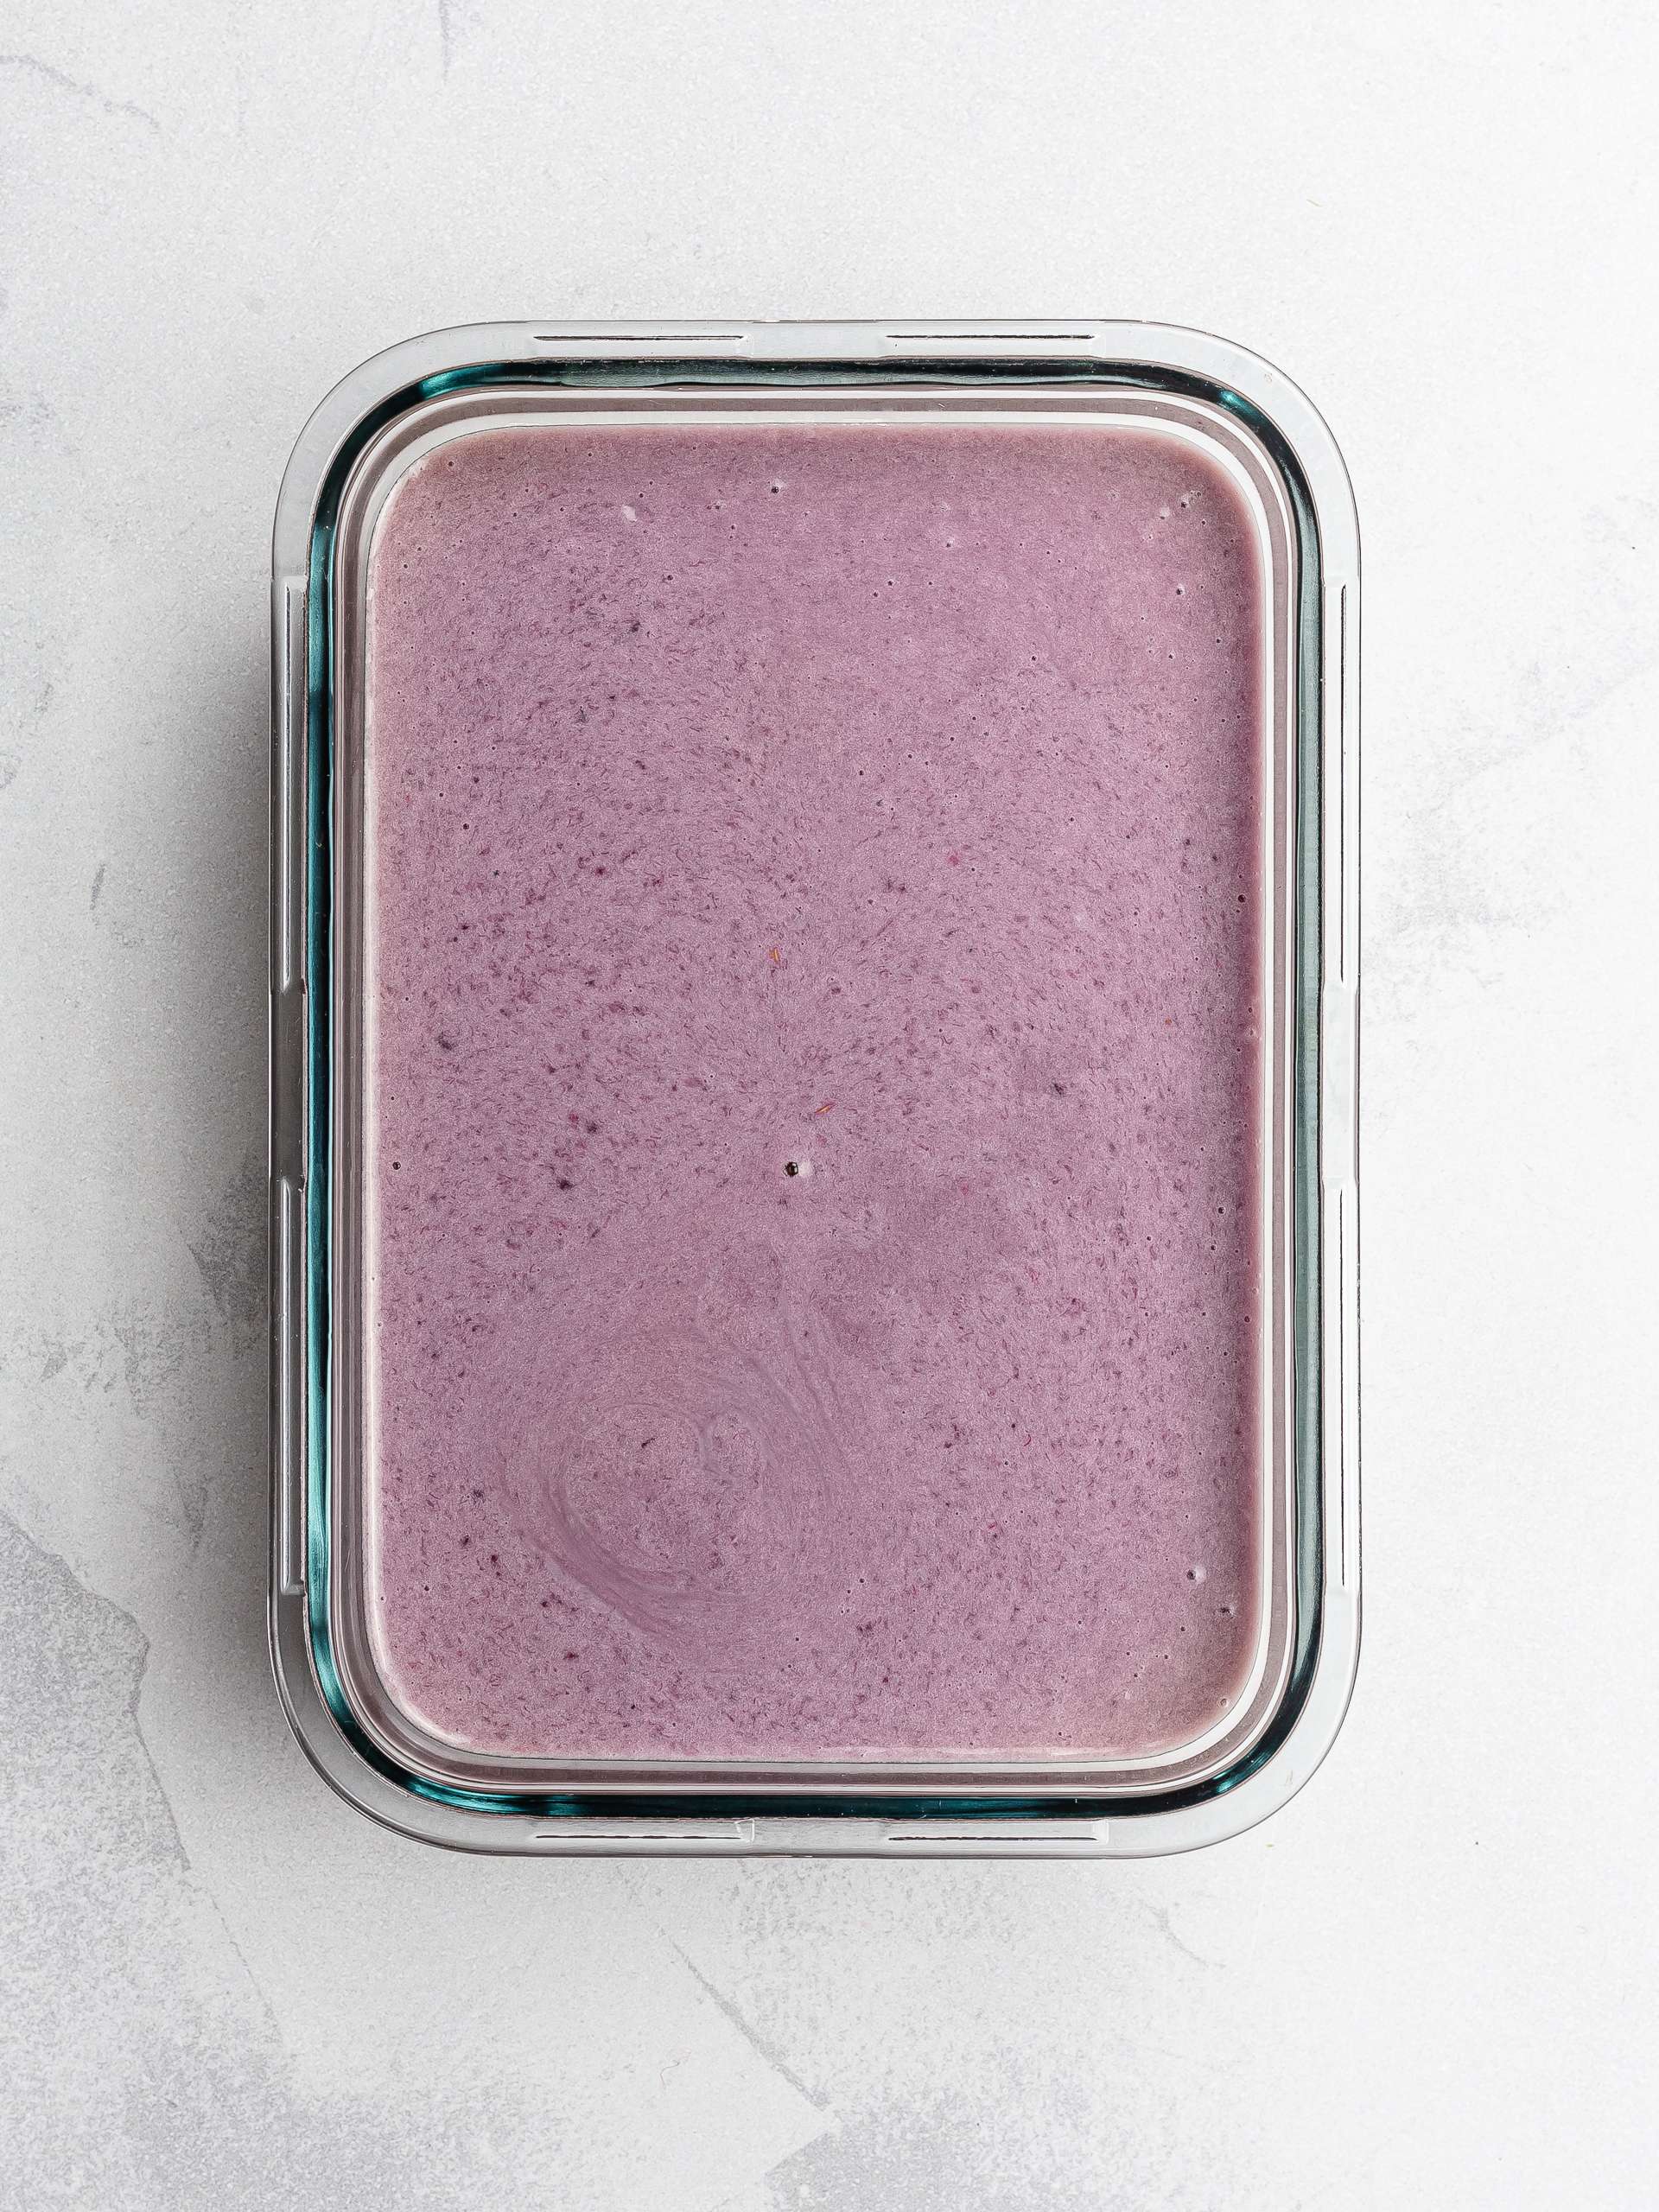 vegan lavender ice cream in a container